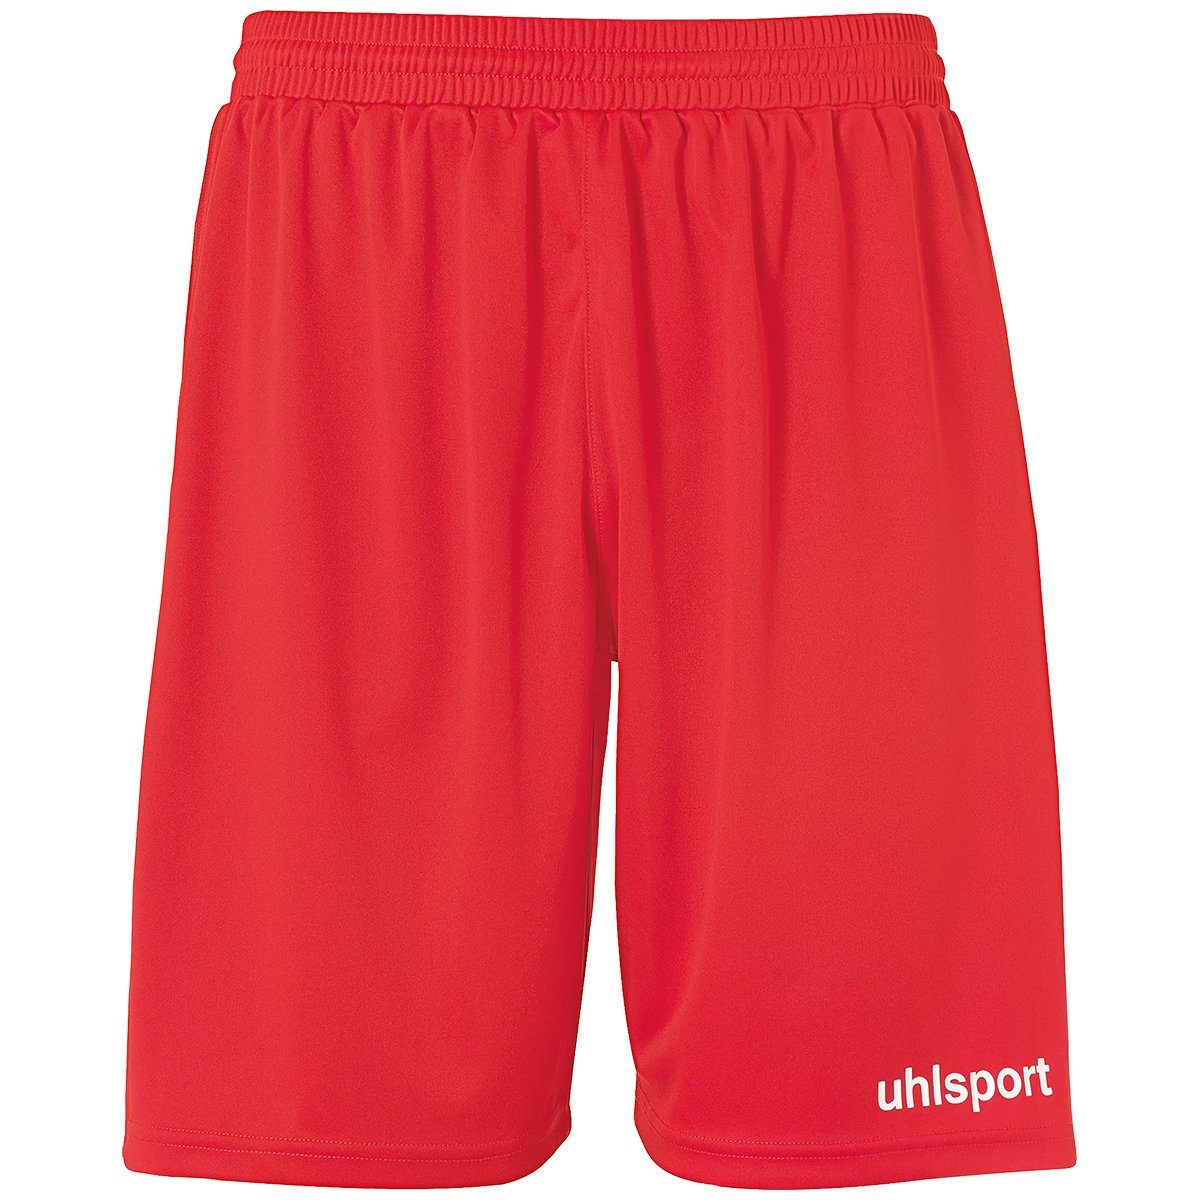 uhlsport Shorts uhlsport Shorts PERFORMANCE SHORTS rot/weiß